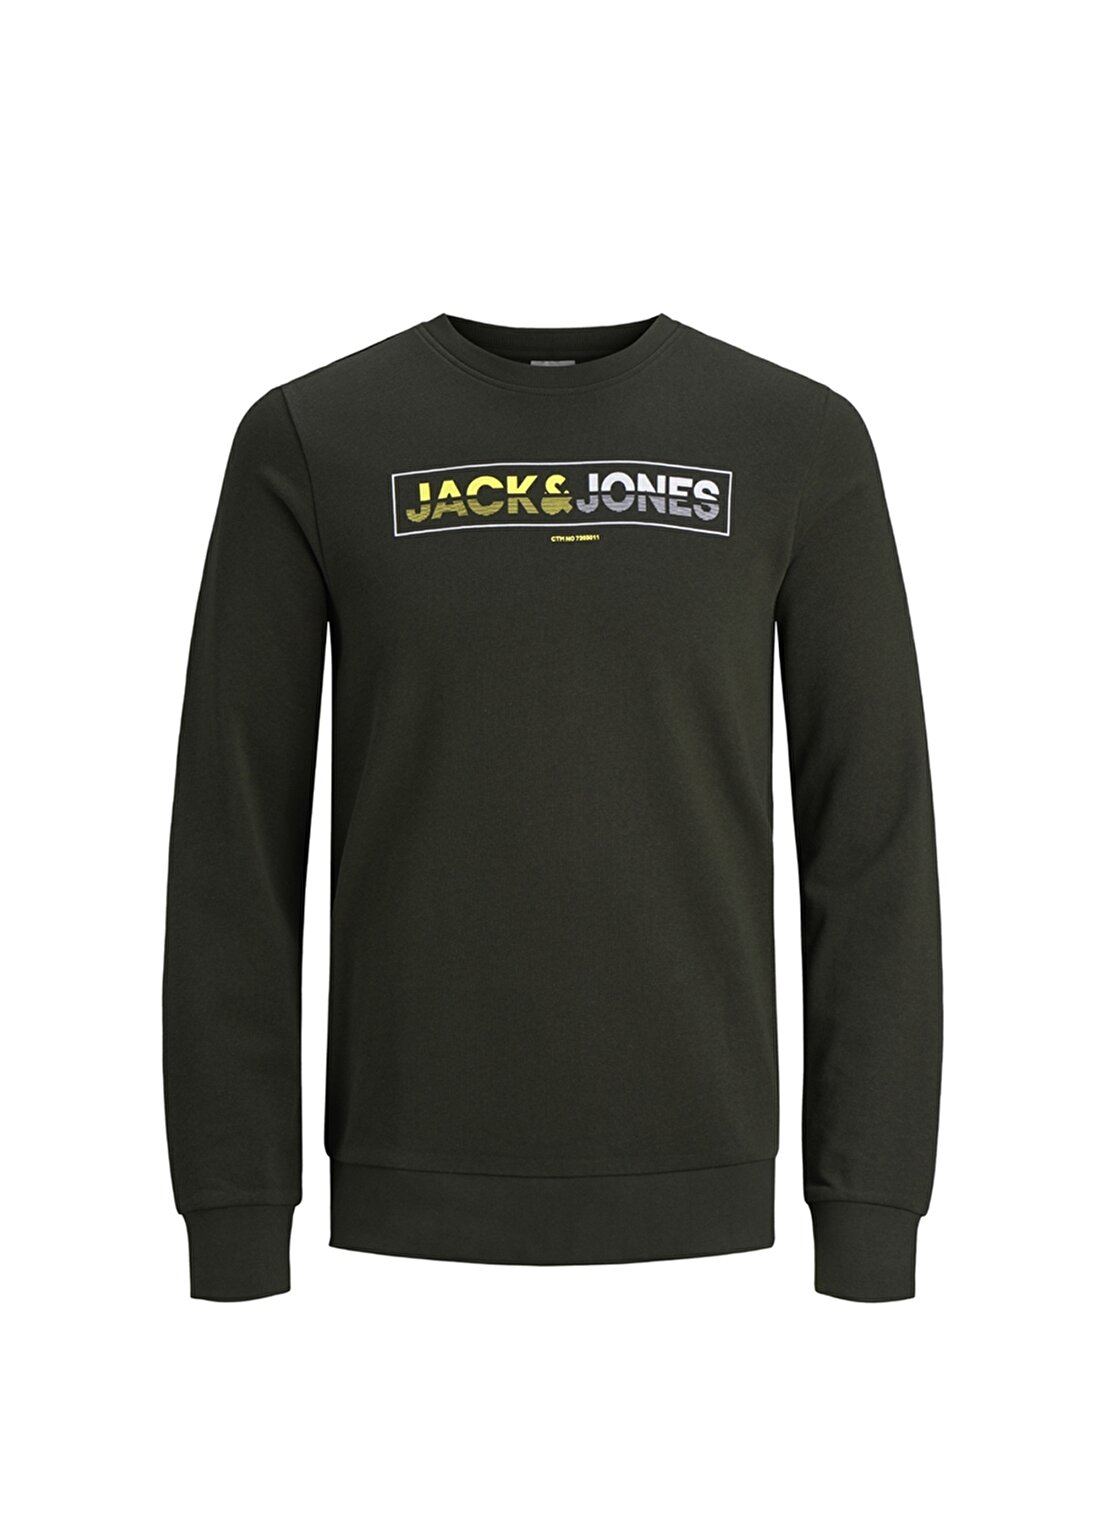 Jack & Jones Berlins Sweat Sweatshirt